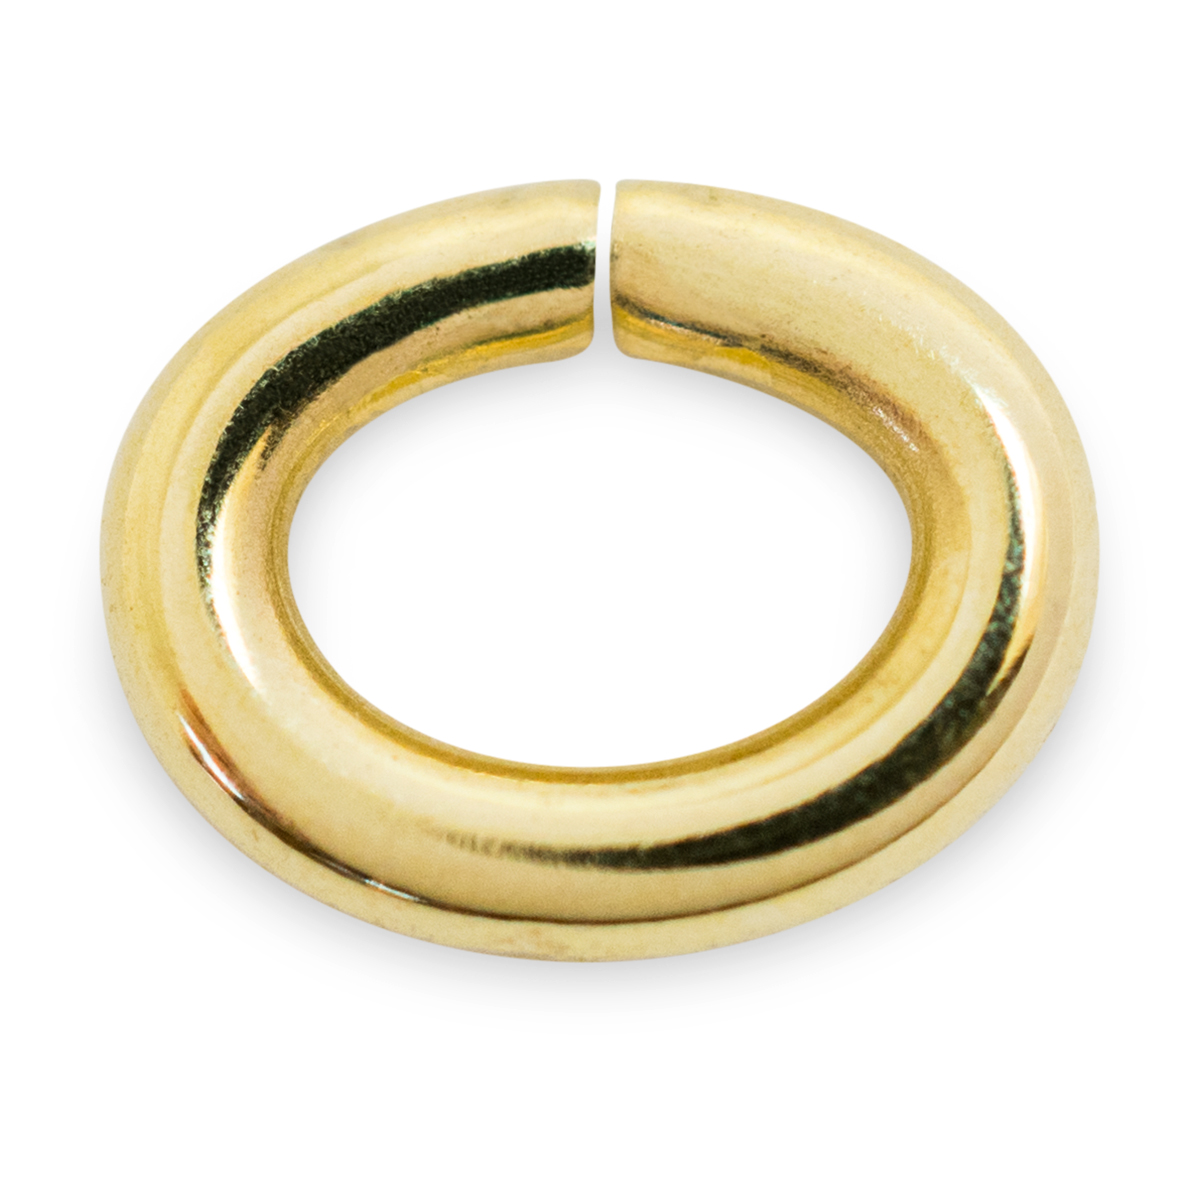 Binderinge, oval, 585/- Gelbgold, Ø 4,5 mm, Stärke 0,8 mm